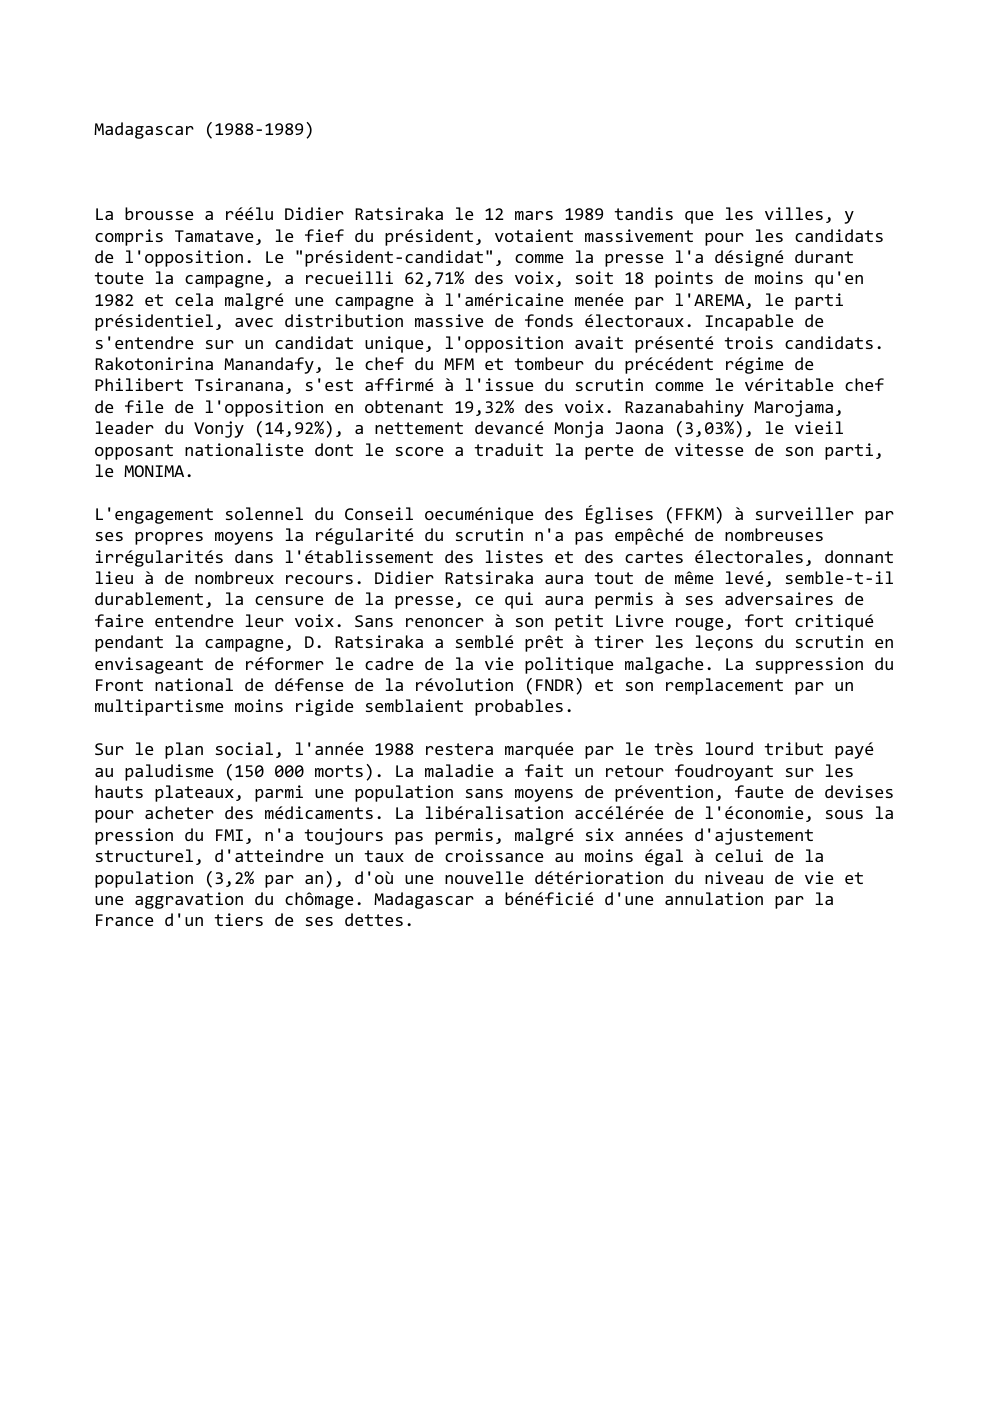 Prévisualisation du document Madagascar (1988-1989)

La brousse a réélu Didier Ratsiraka le 12 mars 1989 tandis que les villes, y
compris Tamatave, le...